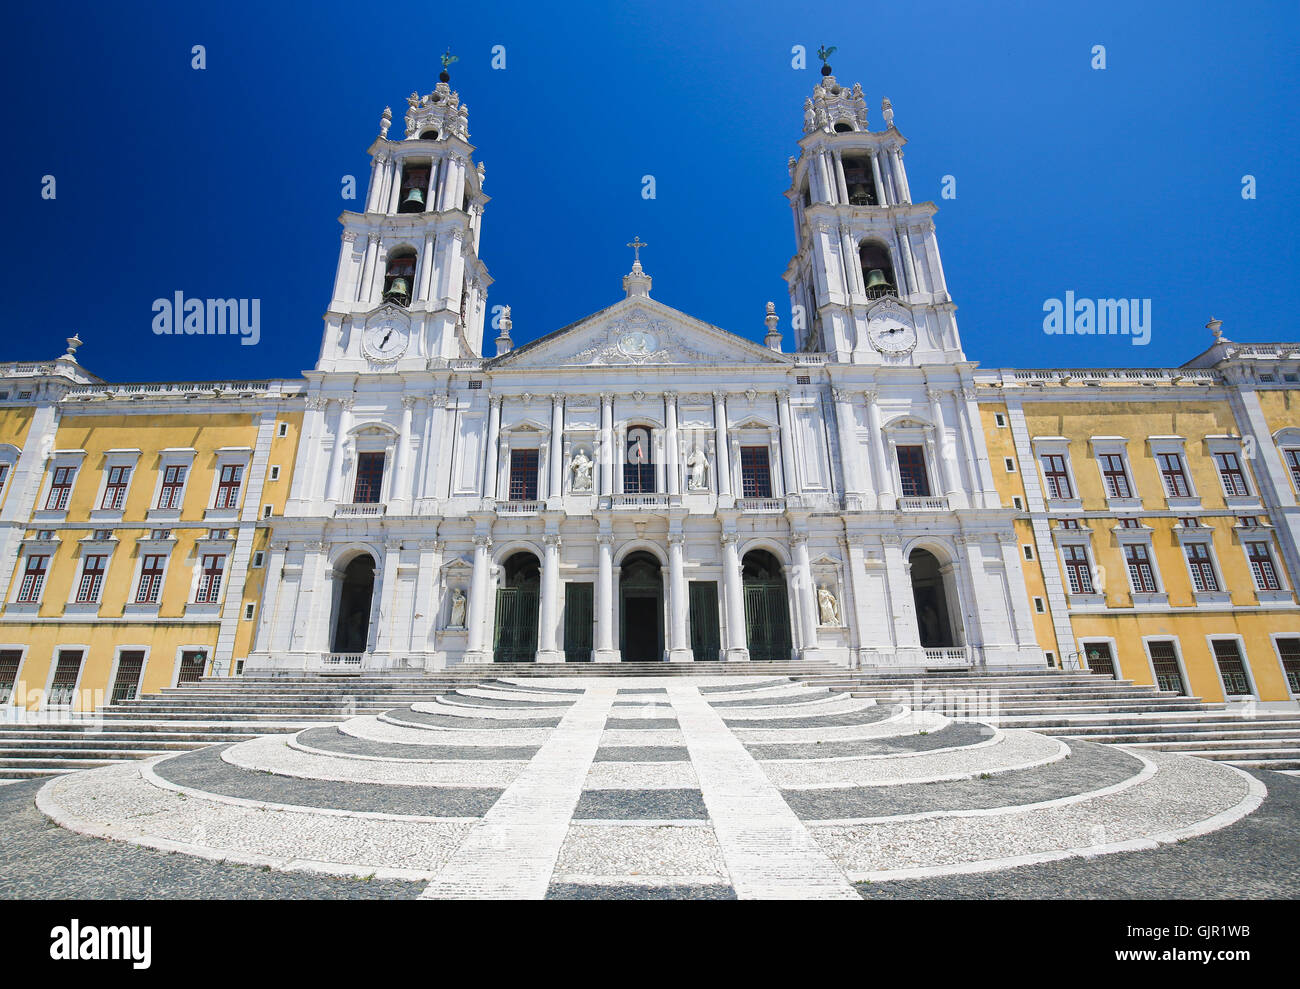 Fachada de la basílica en el Palacio de Mafra, Portugal, un famoso Palacio real construido en el siglo XVIII. Foto de stock